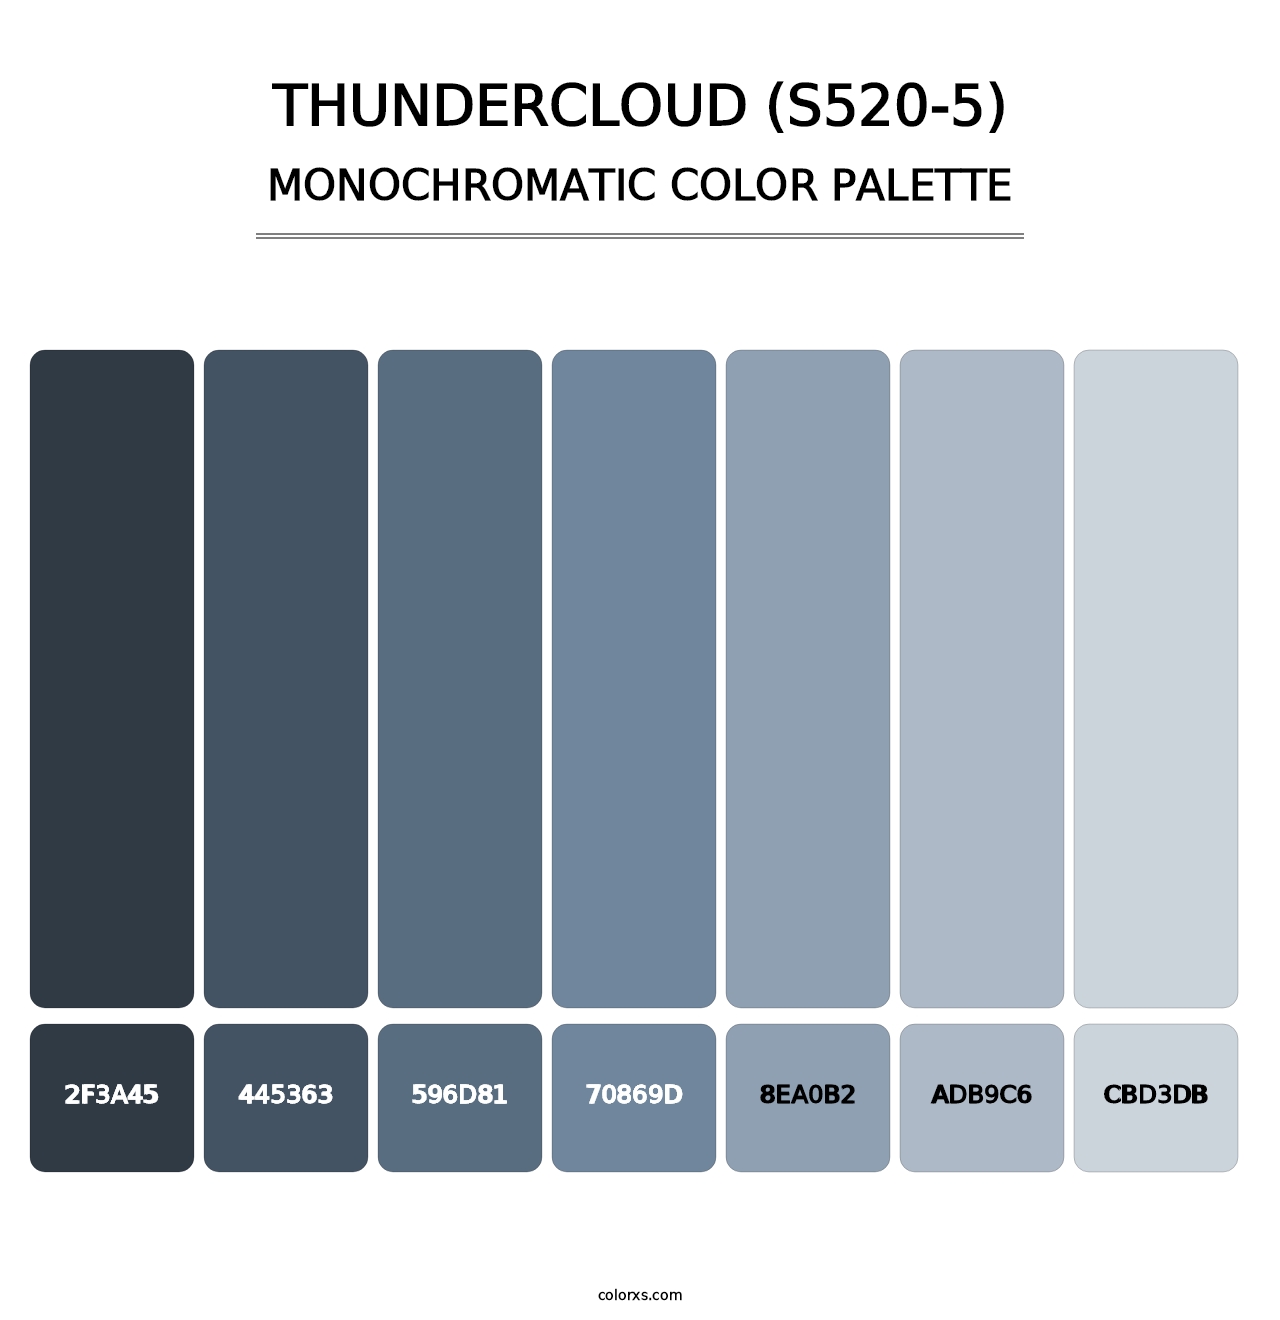 Thundercloud (S520-5) - Monochromatic Color Palette